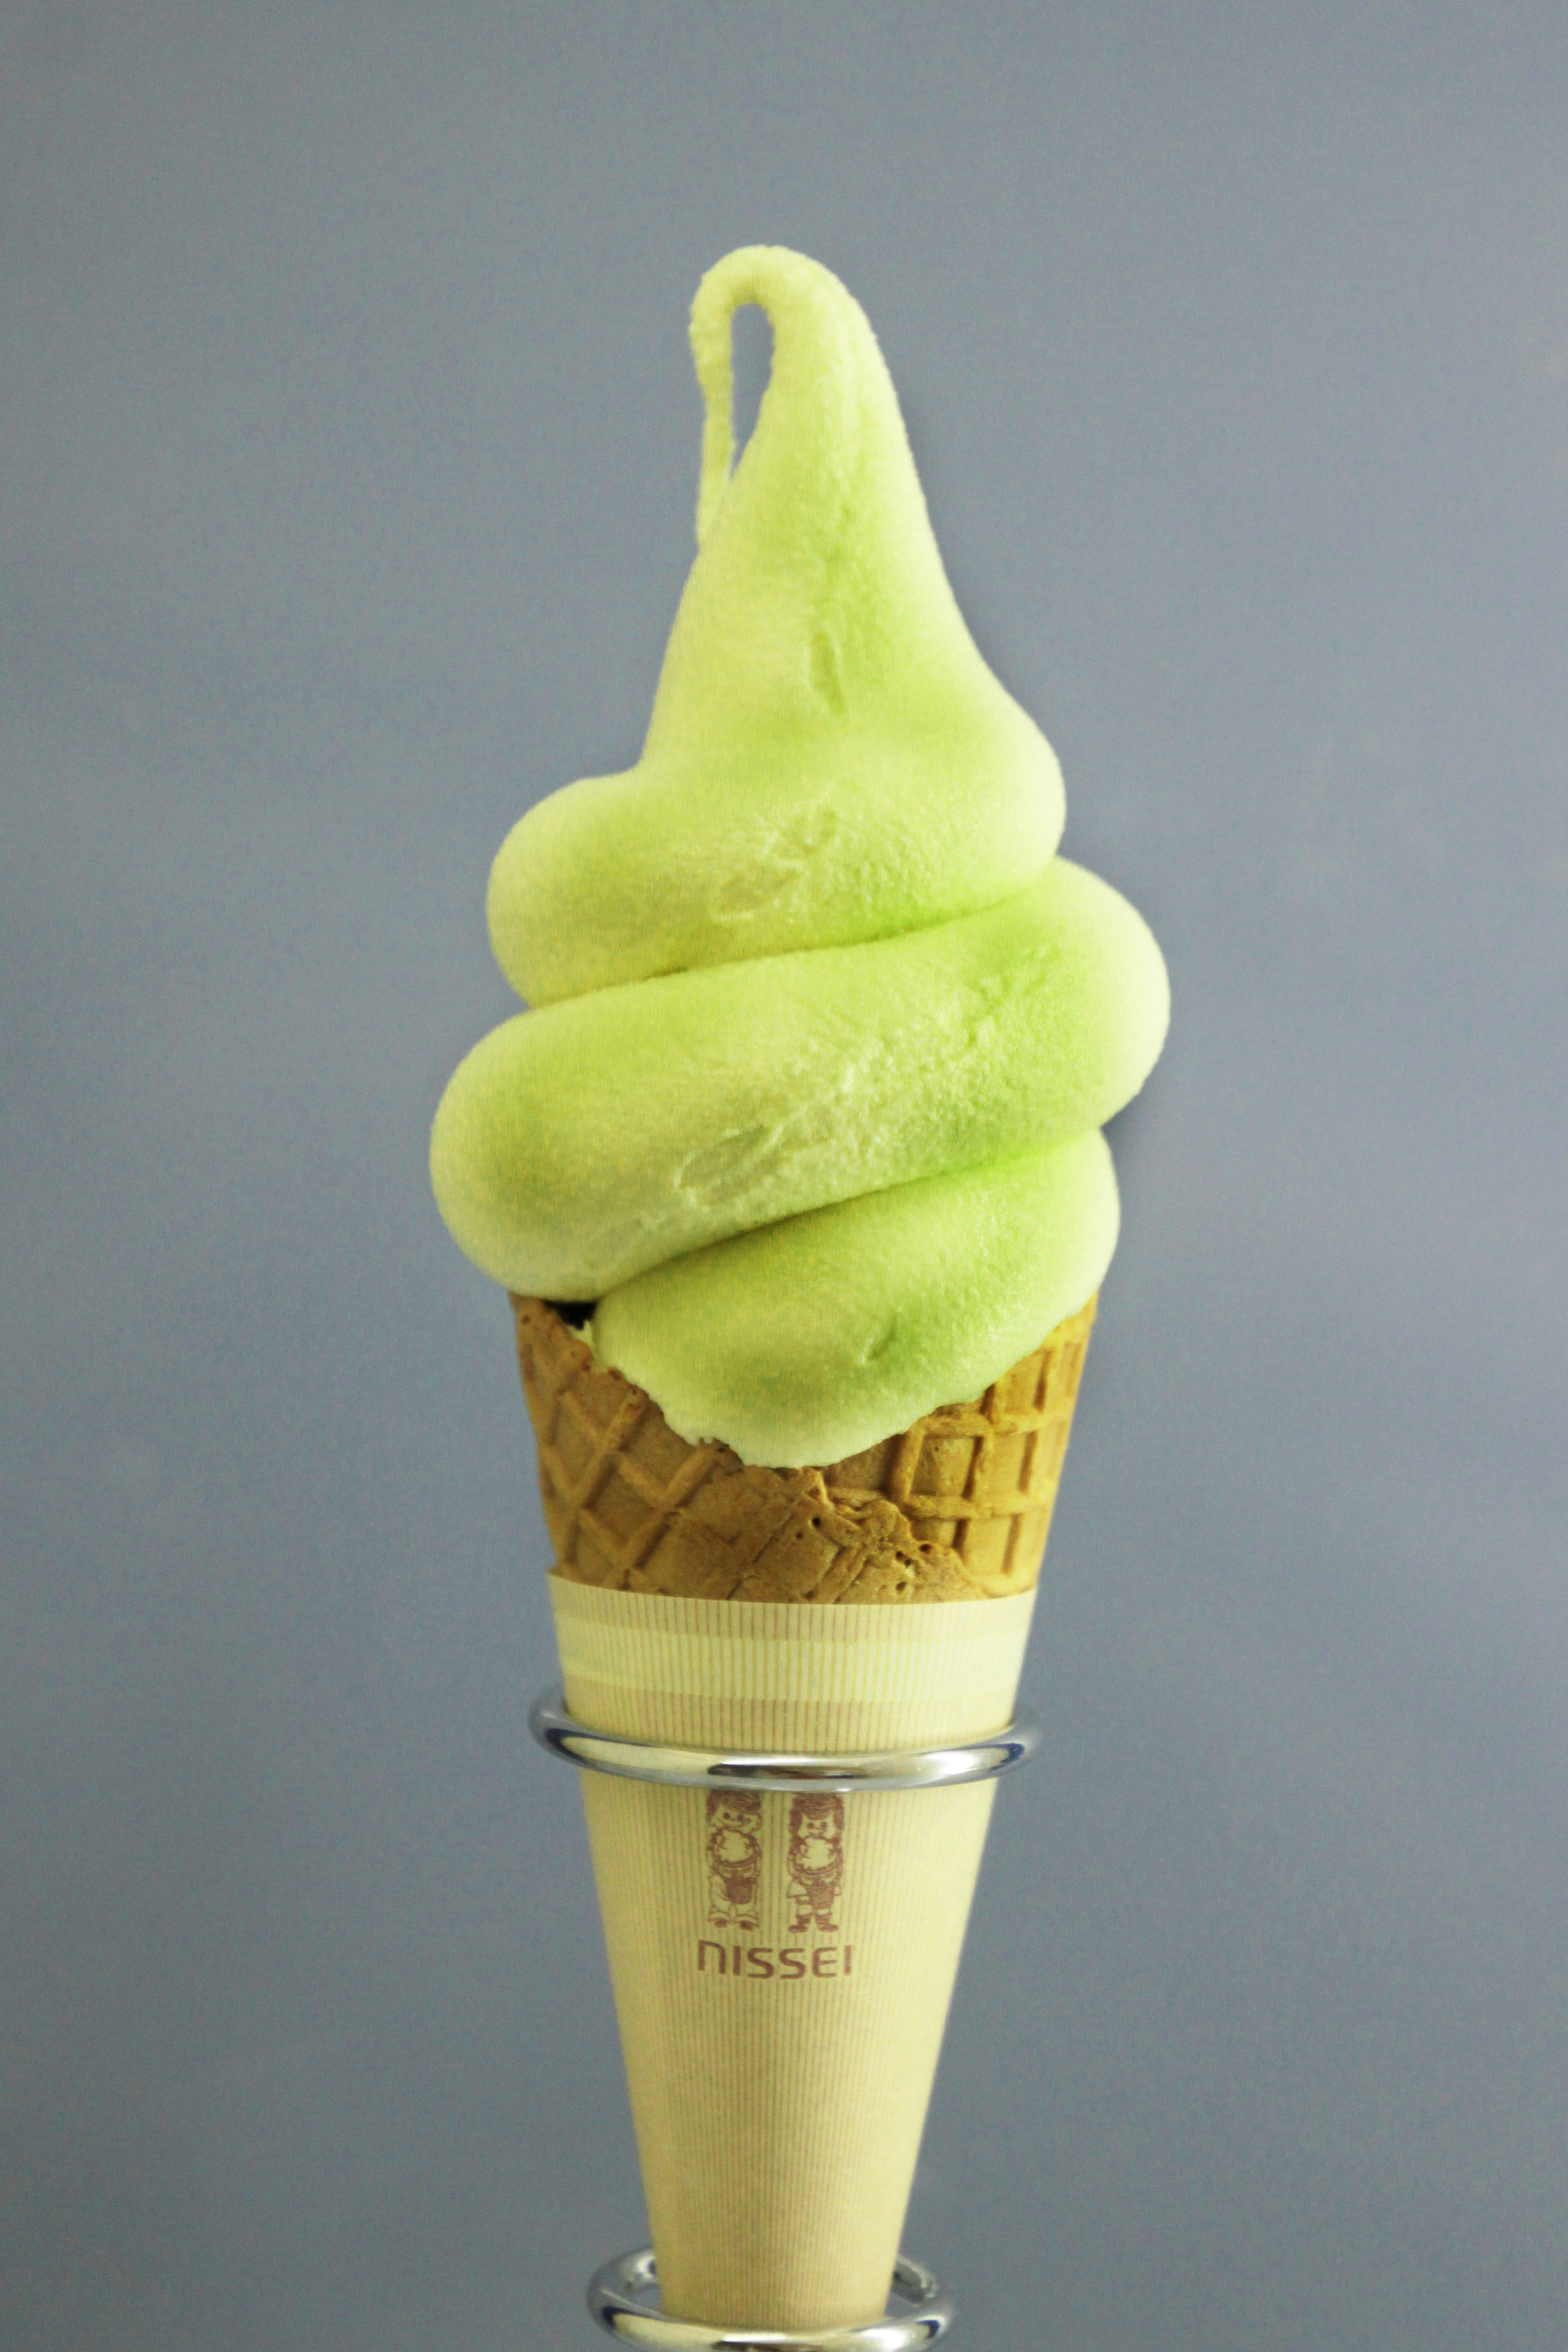 シャボテン公園名物シャボテンソフトクリーム
バニラにサボテンを練り込んだソフトクリームです。